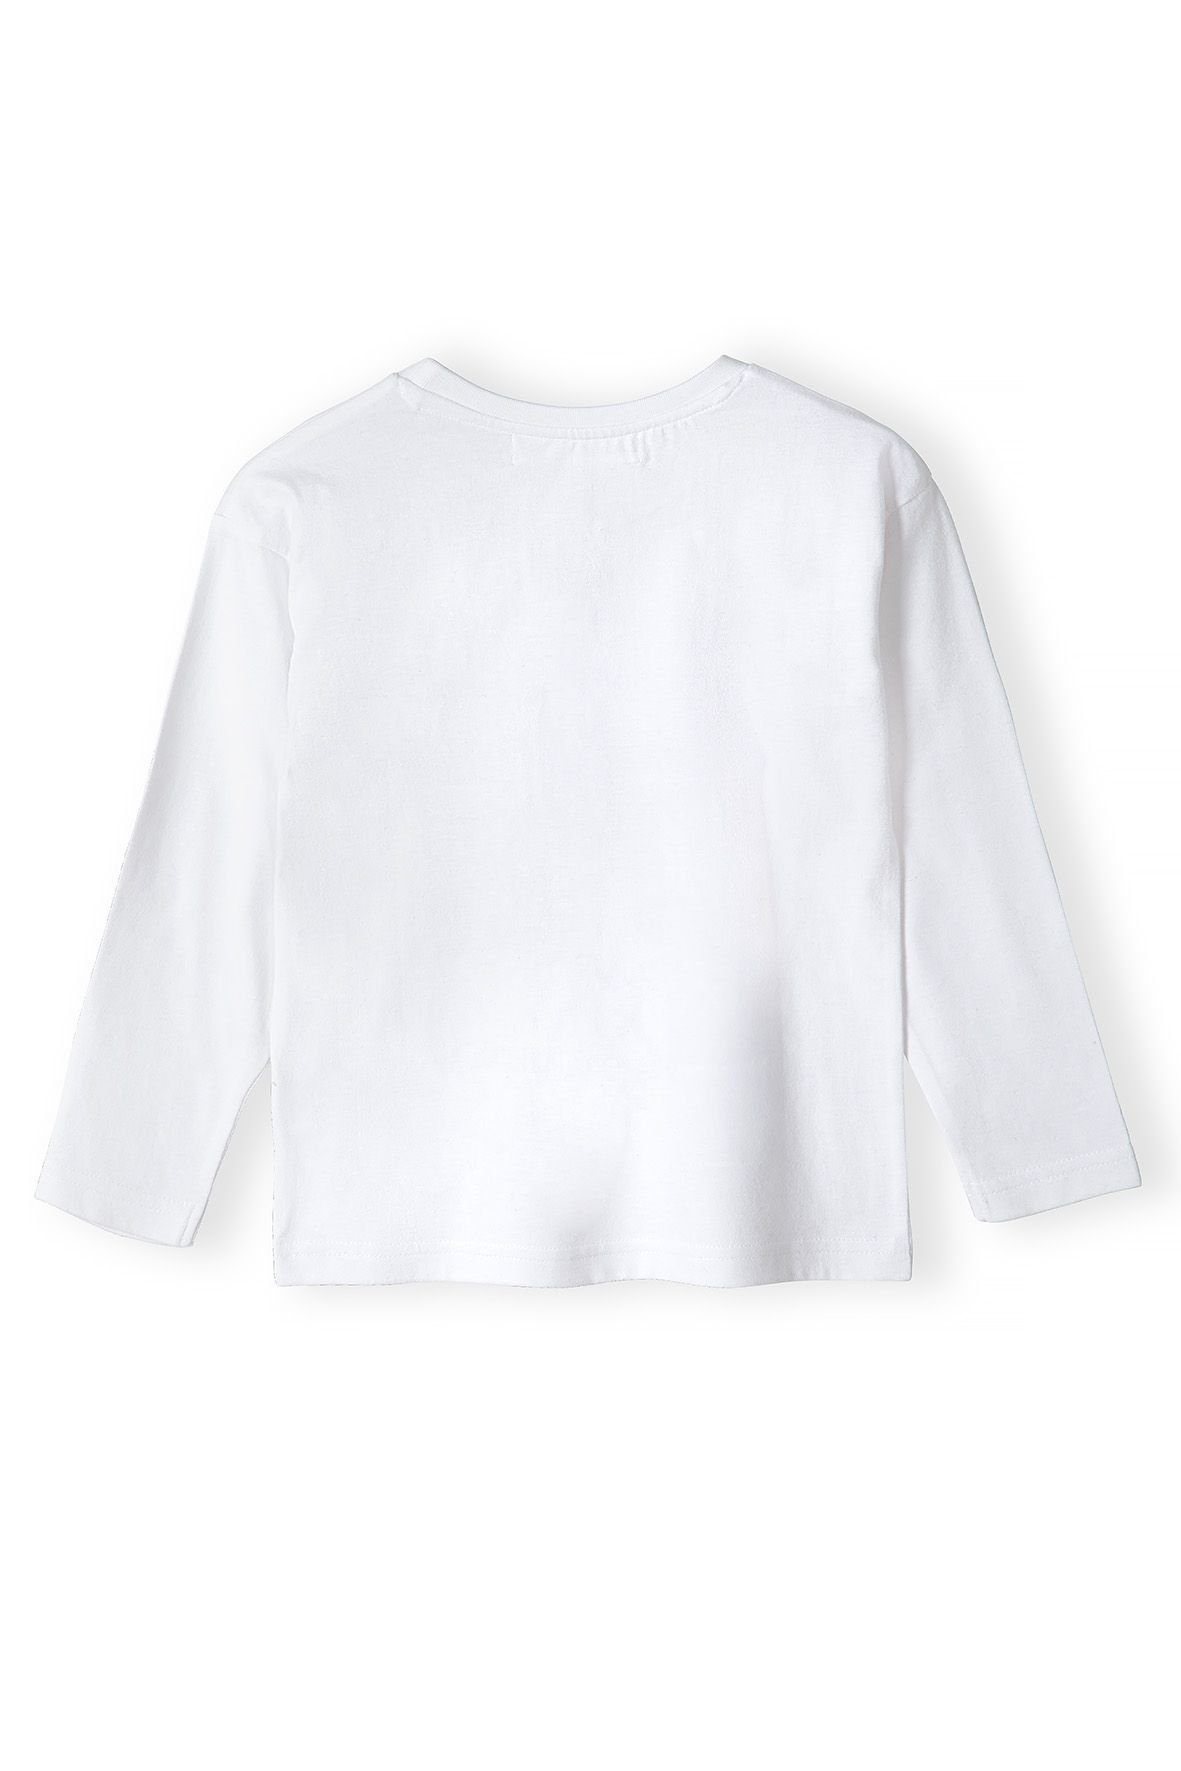 MINOTI Langarmshirt (3-14y) mit Weiß Aufdruck